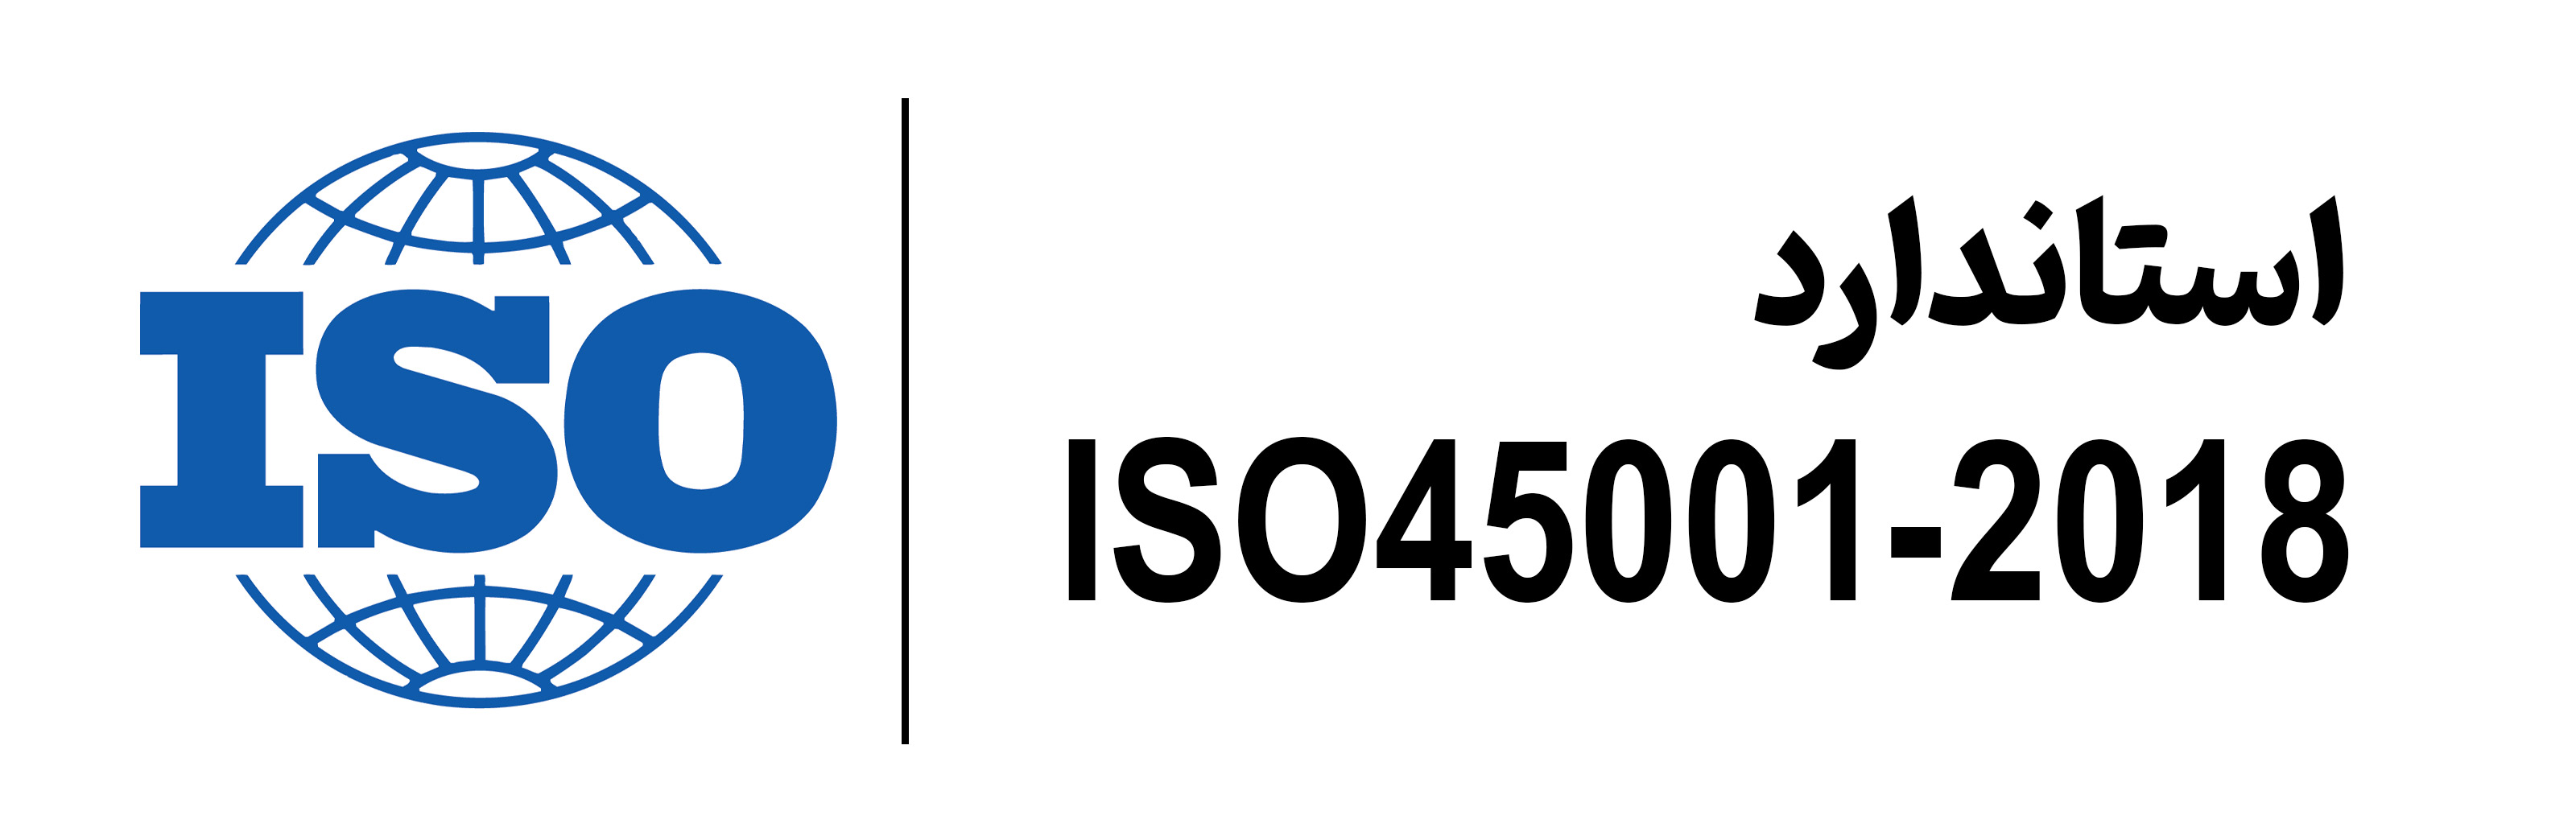 estandard ISO45001-2018 mehregan